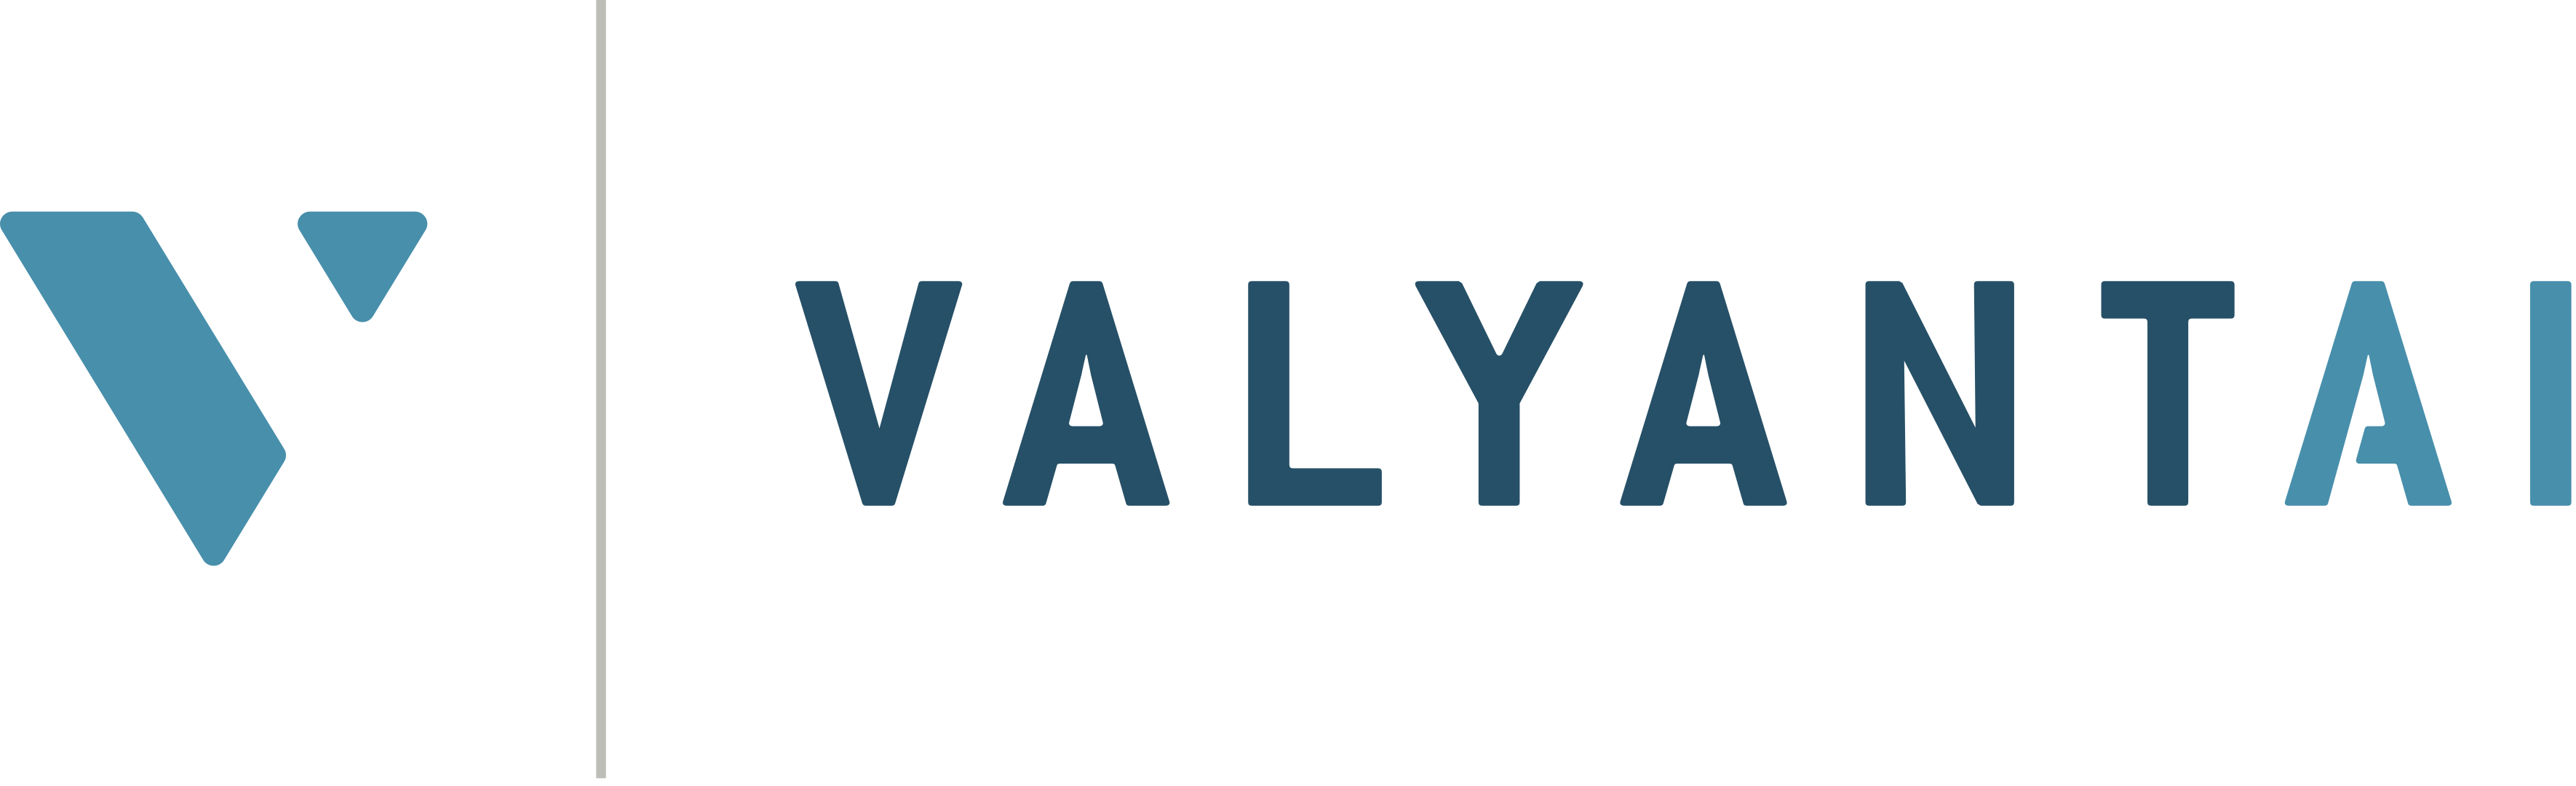 valyant_logo huge.png